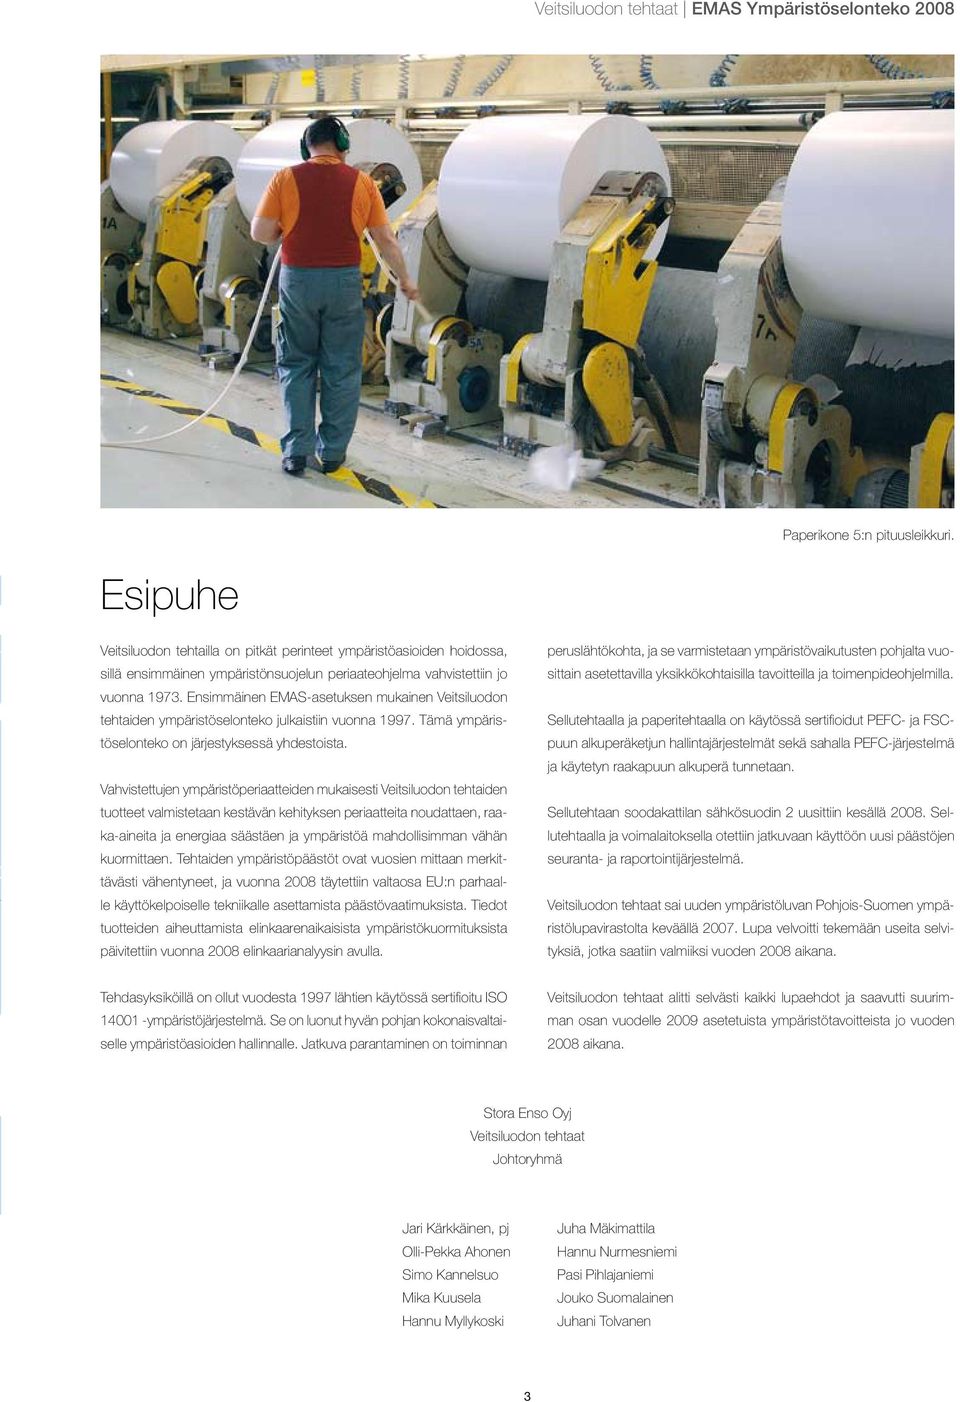 Ensimmäinen EMAS-asetuksen mukainen Veitsiluodon tehtaiden ympäristöselonteko julkaistiin vuonna 1997. Tämä ympäristöselonteko on järjestyksessä yhdestoista.